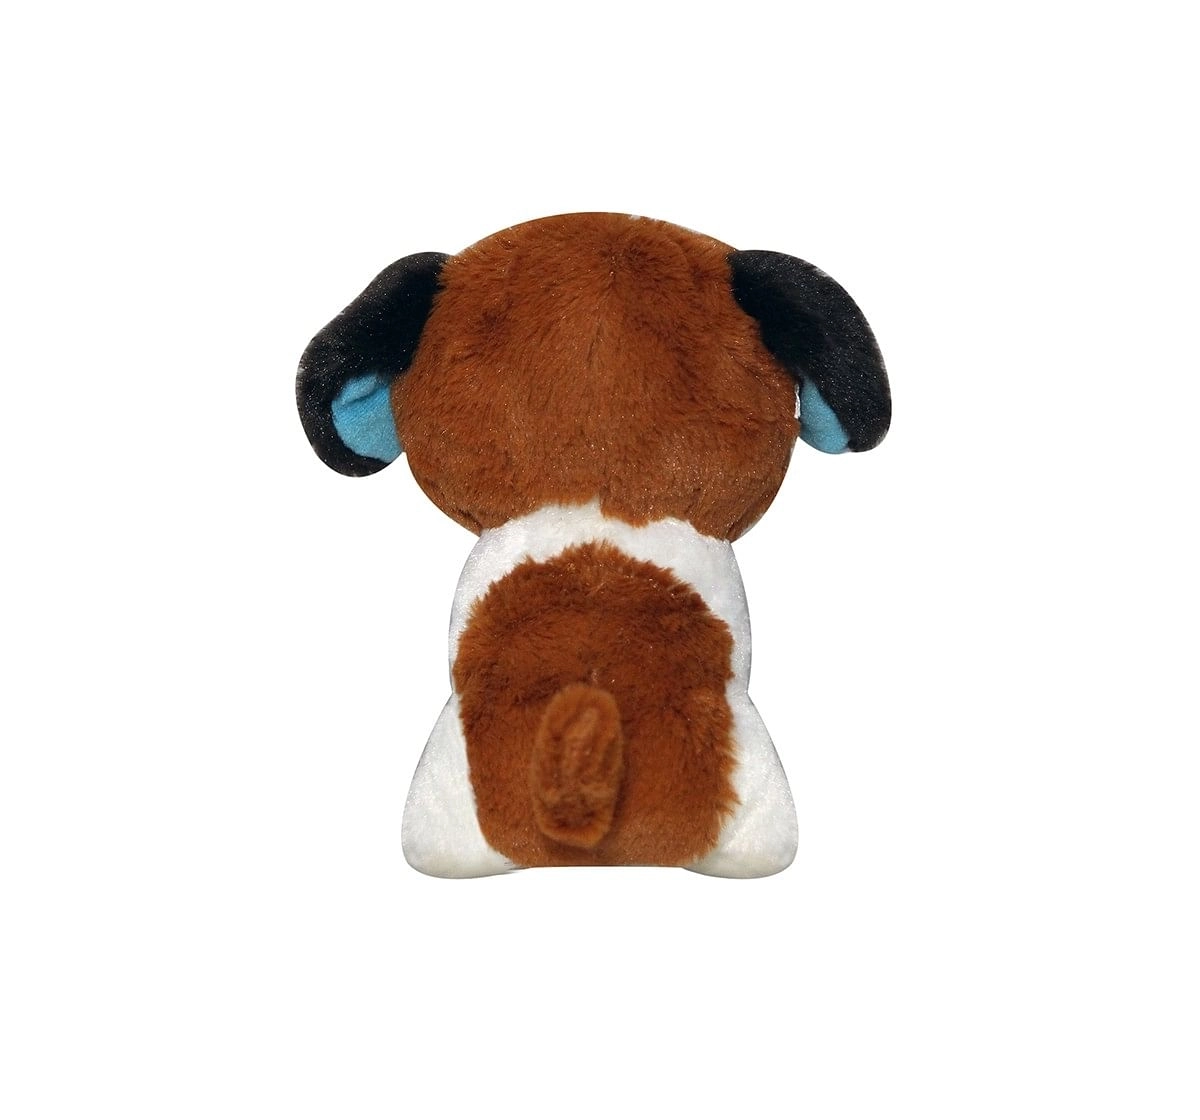 Softbuddies Big Eye Dog Quirky Soft Toys for Kids age 3Y+ - 30 Cm (Brown)